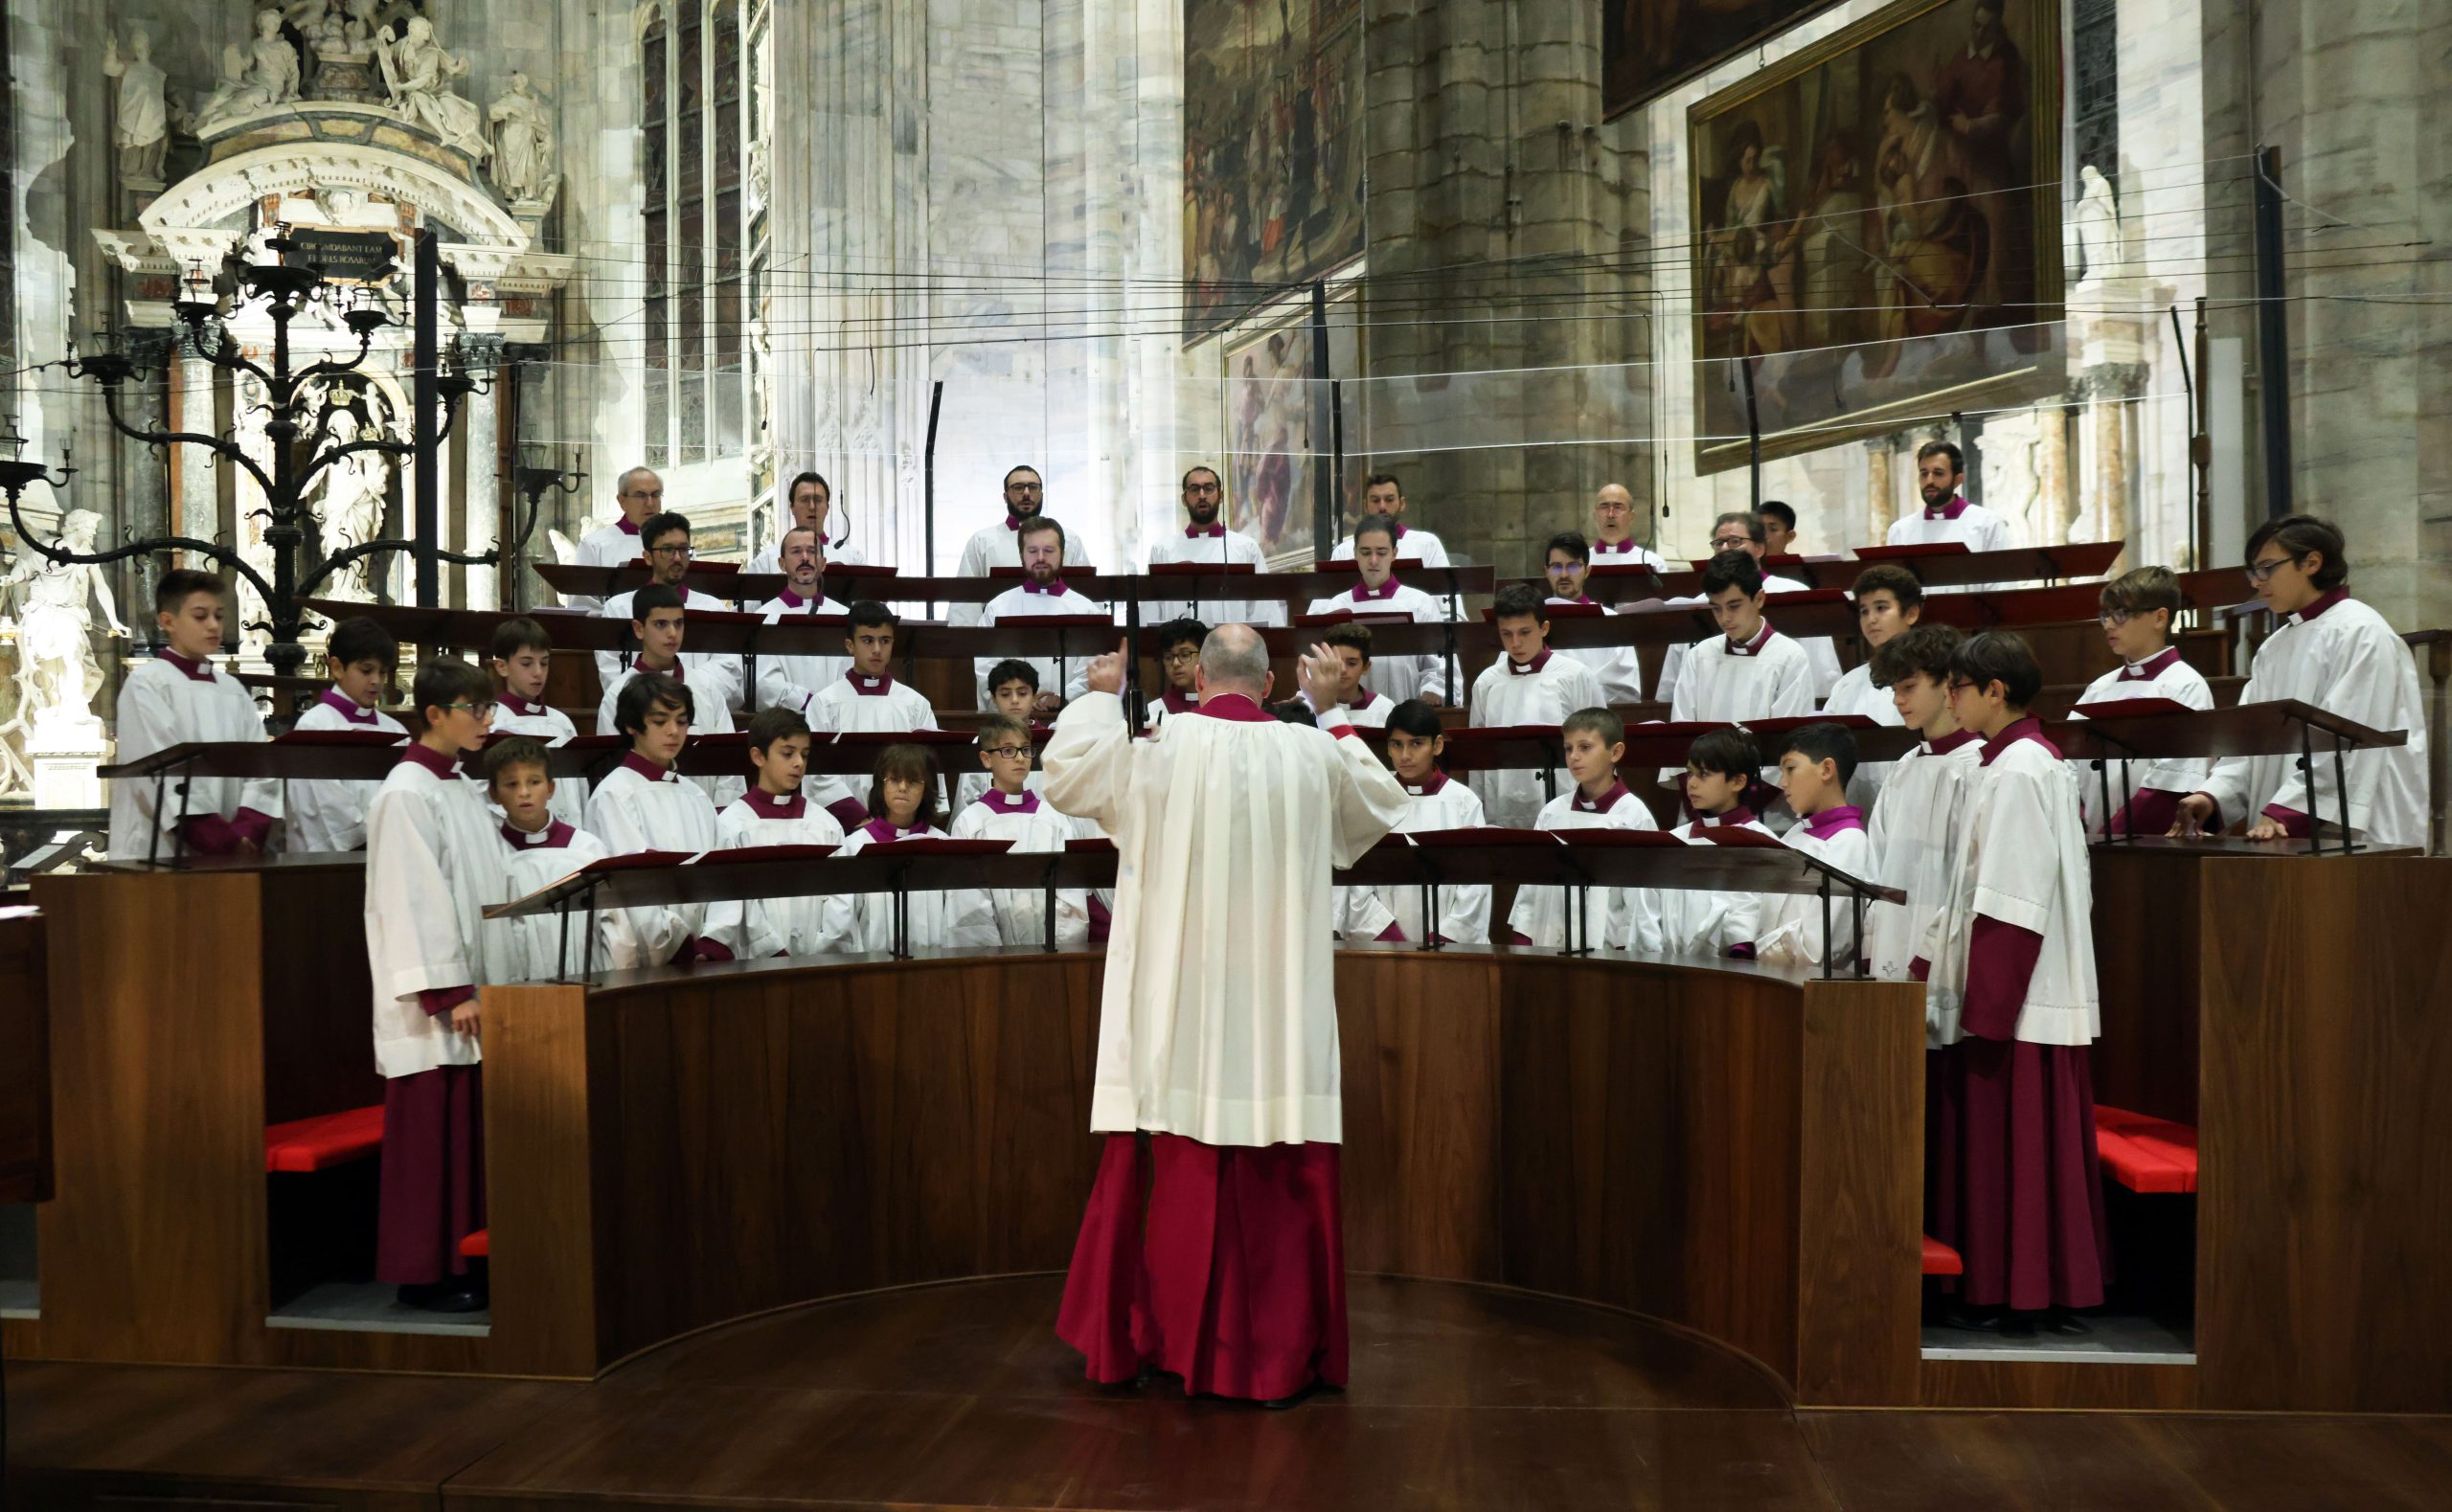 Mors tua sit vita nostra, la Cappella Musicale del Duomo in concerto all’Auditorium di Milano